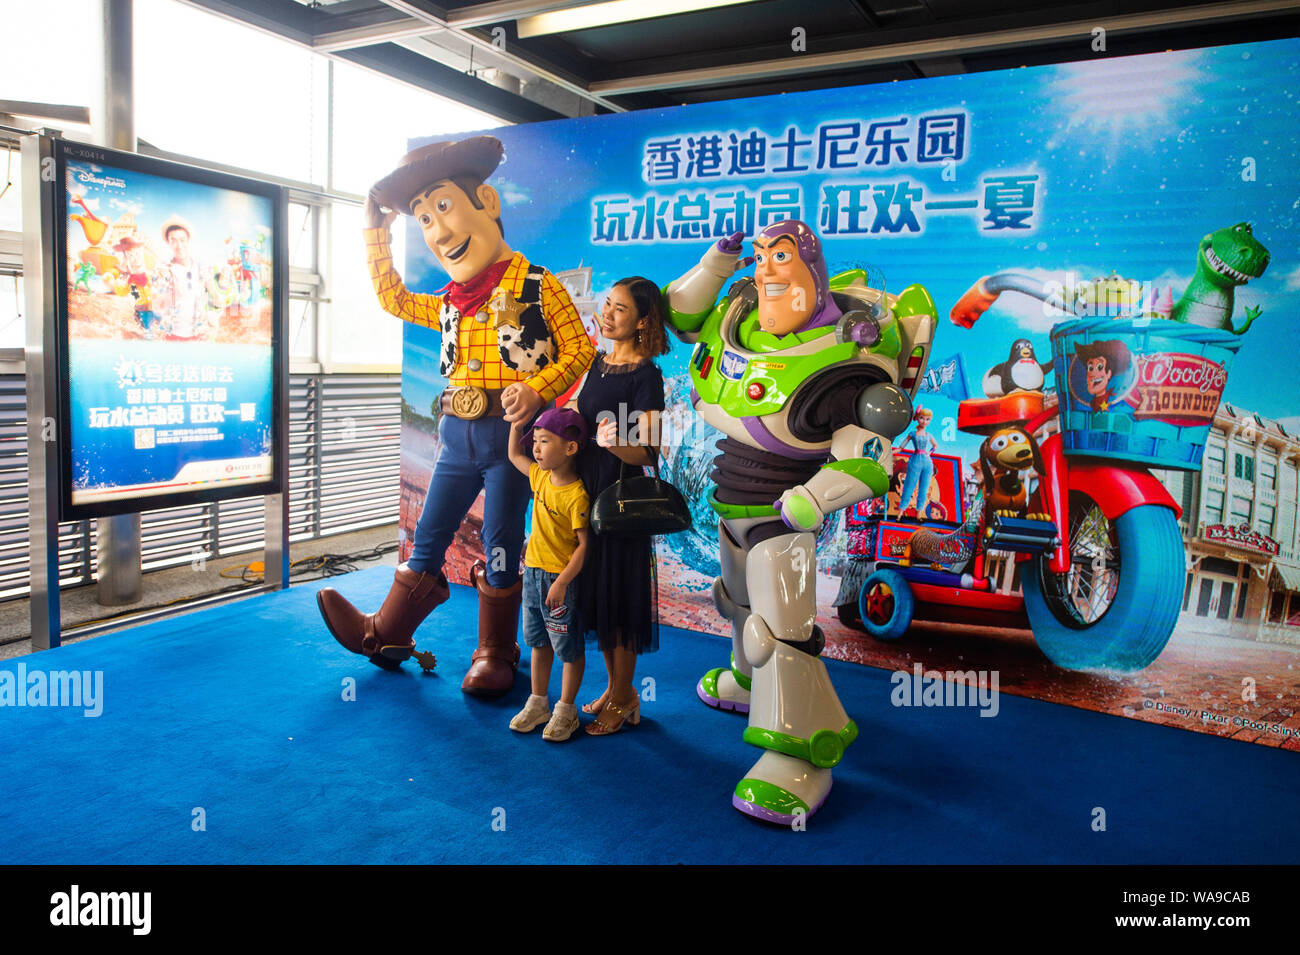 Animatori vestiti di Buzz Lightyear e Woody da Disney film di animazione Toy Story pongono in corrispondenza di una stazione della metropolitana della linea 4 della metropolitana nella città di Shenzhen, s Foto Stock